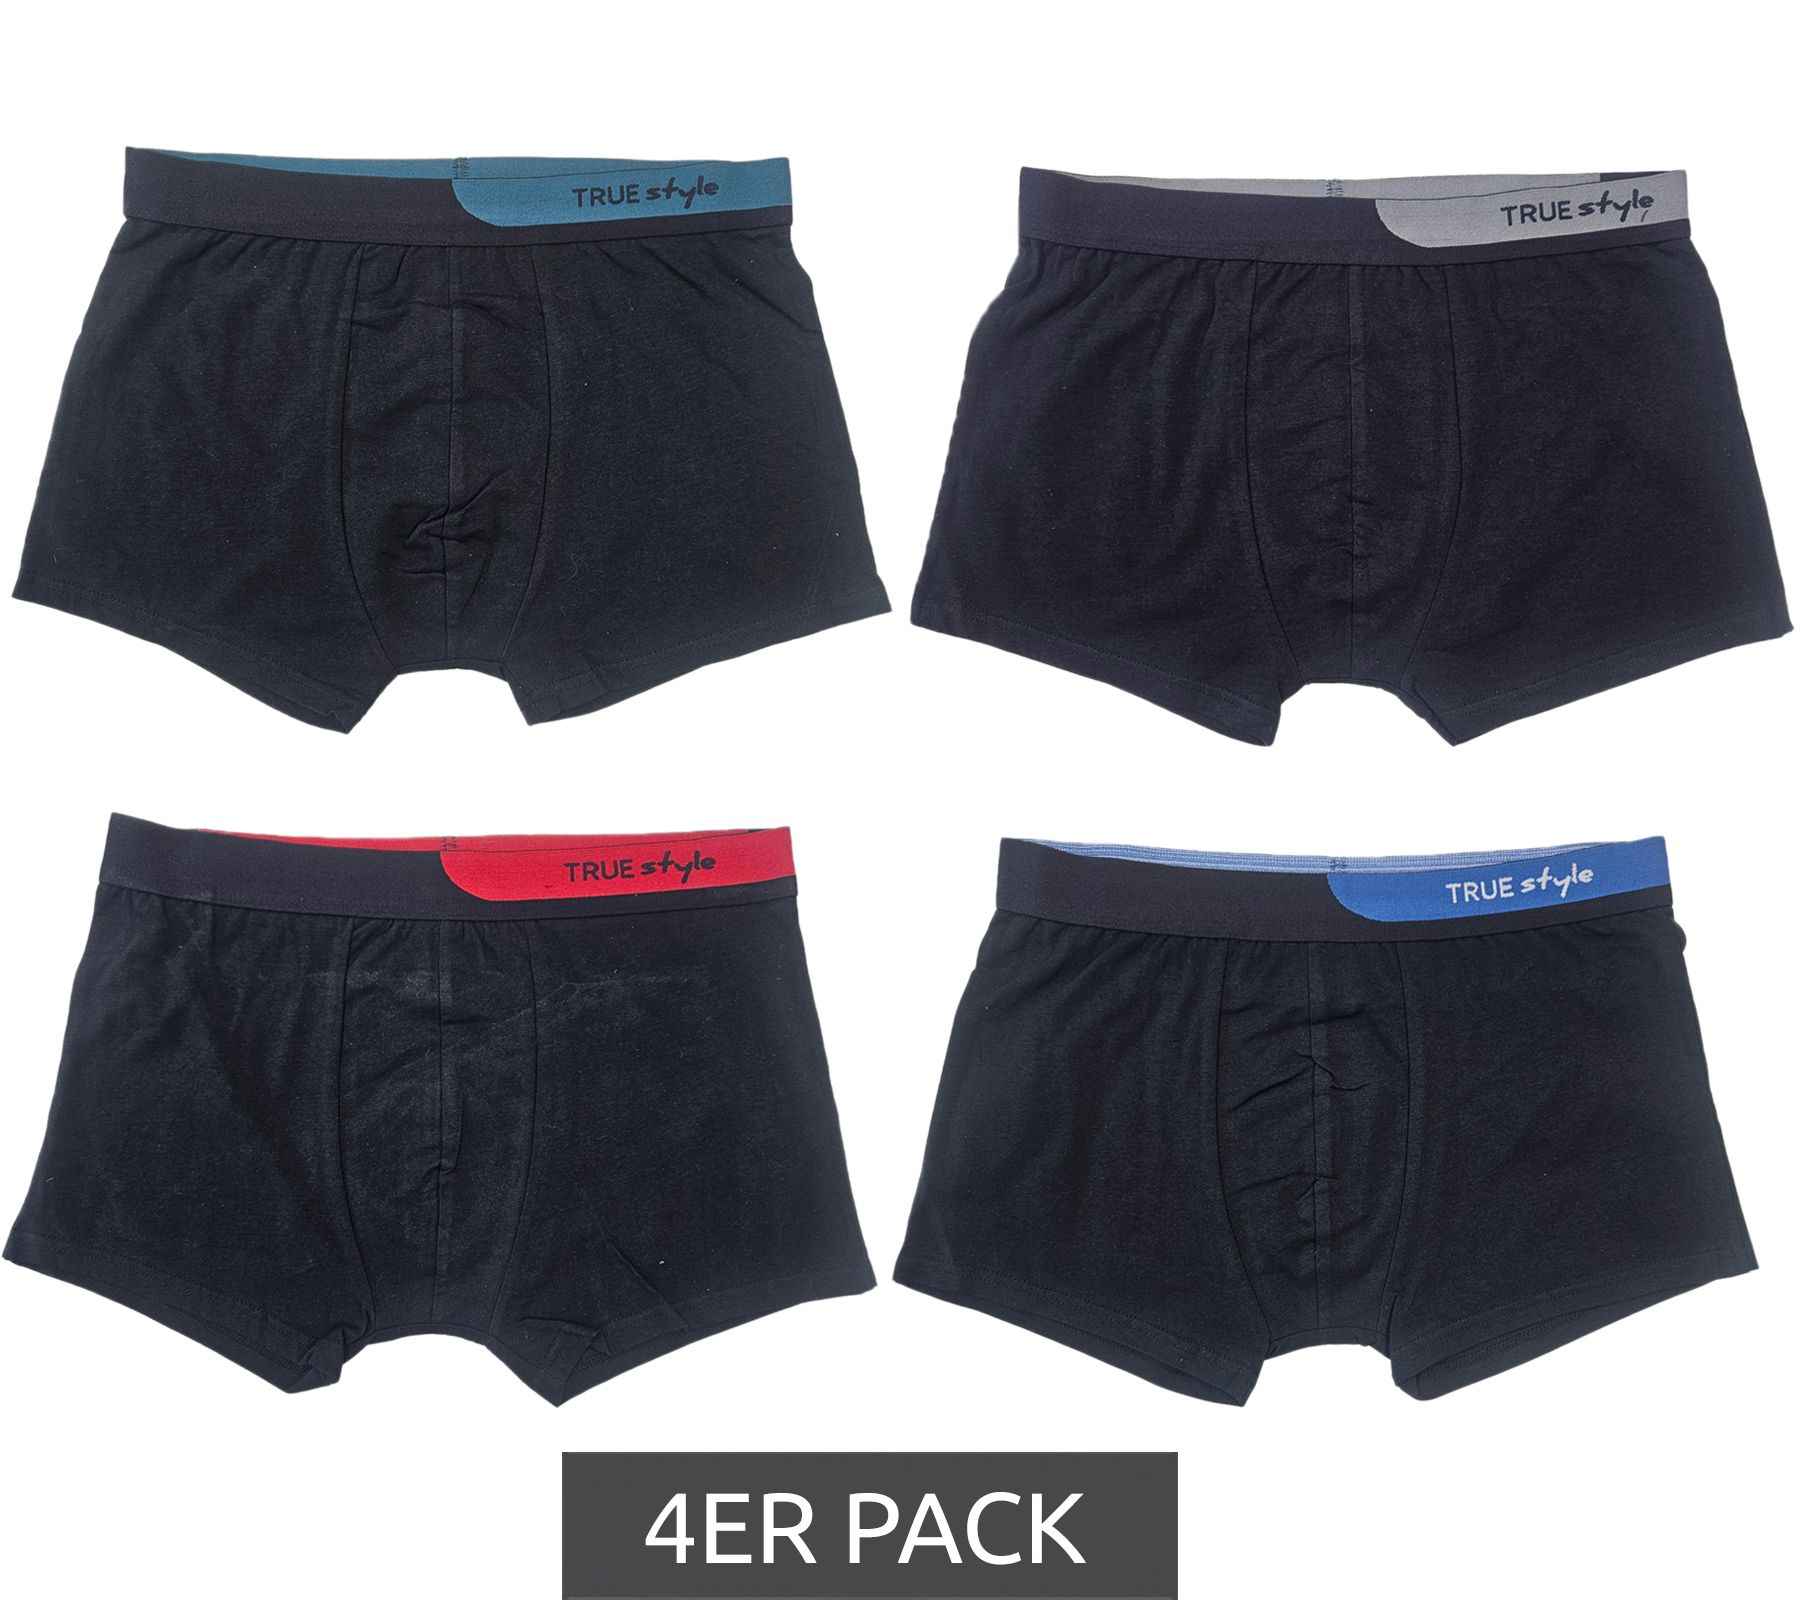 4er Pack TRUE style Herren Boxershorts nachhaltige Retro-Shorts 7708326 Schwarz/Blau/Grau/Grün von TRUE style